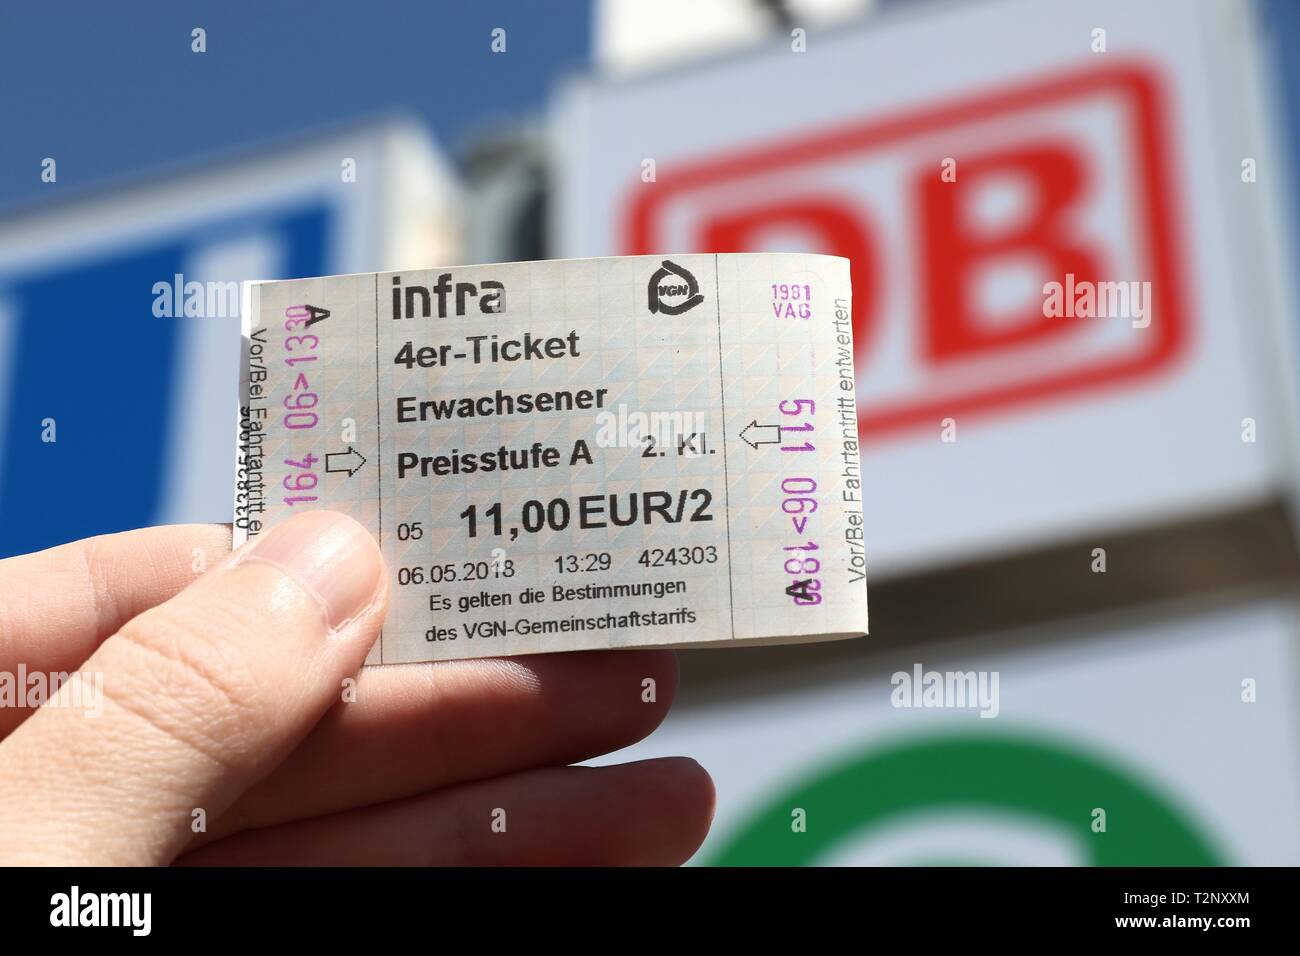 NUREMBERG, ALLEMAGNE - le 7 mai 2018 : l'achat de billets pour les transports publics (VAG) à Nuremberg, Allemagne. Nuremberg est situé dans la région de Moyenne-franconie. 511 628 peop Banque D'Images